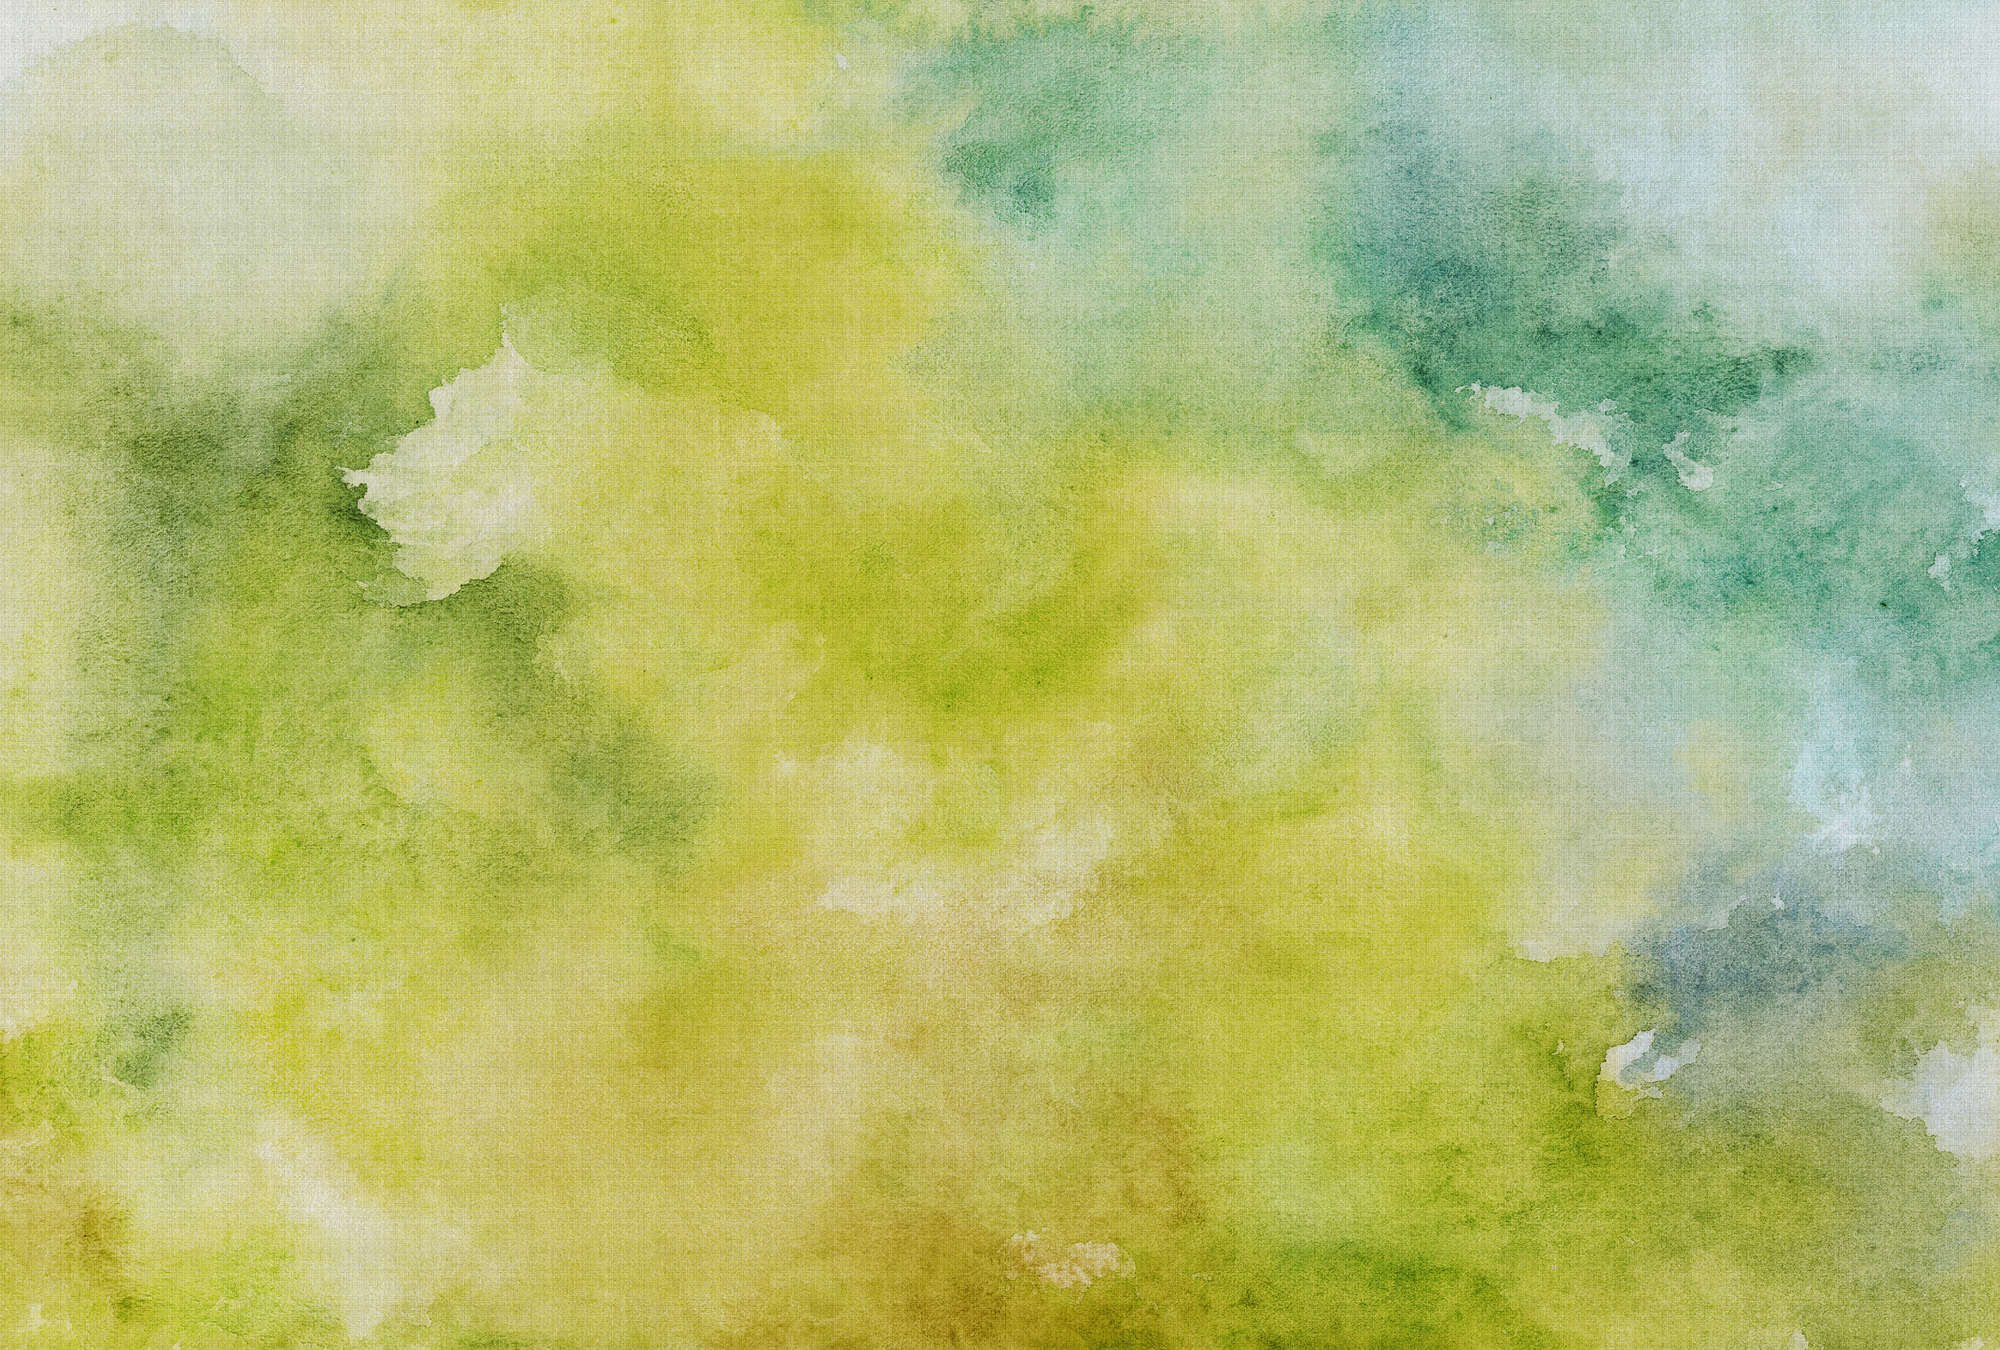             Acuarelas 3 - Motivo de acuarela verde como papel pintado fotográfico en estructura de lino natural - Amarillo, Verde | Tejido no tejido liso mate
        